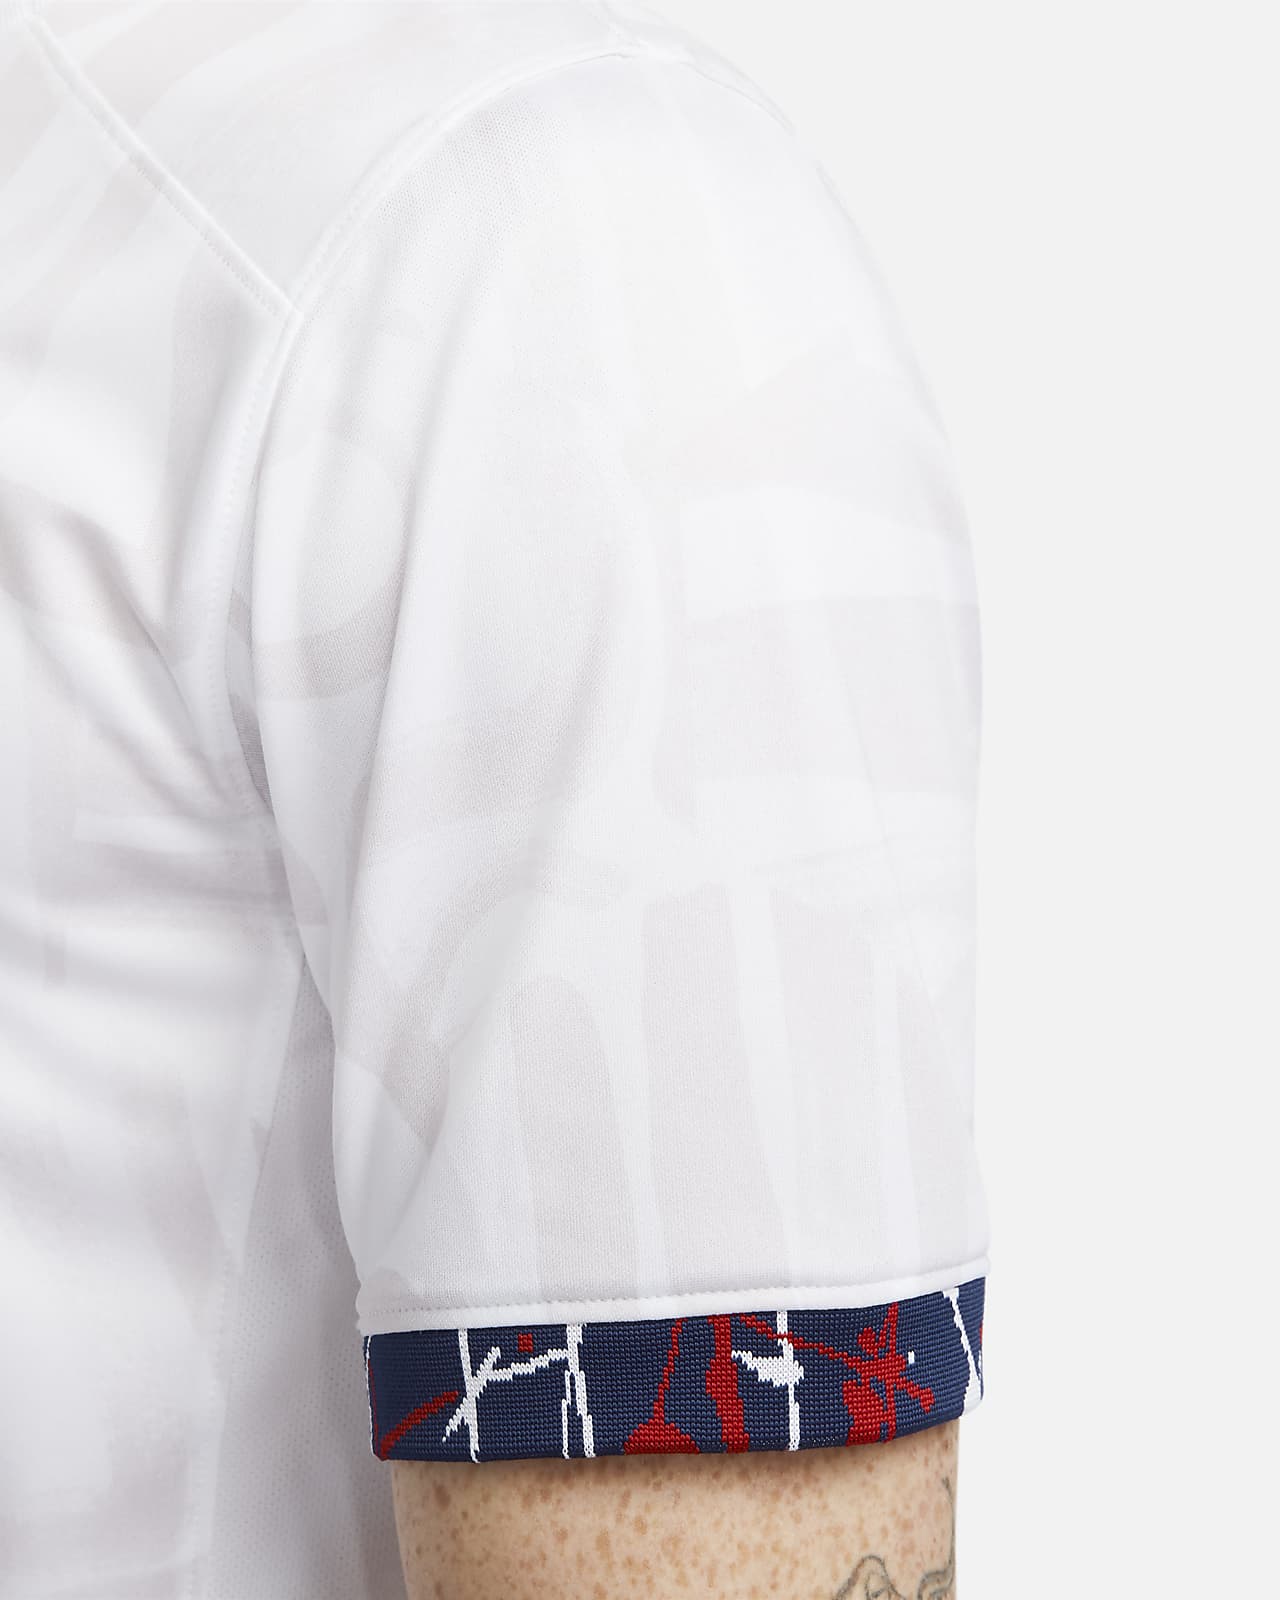 Louis Vuitton Long Sleeve Regular Size Hoodies & Sweatshirts for Men for  Sale, Shop Men's Athletic Clothes